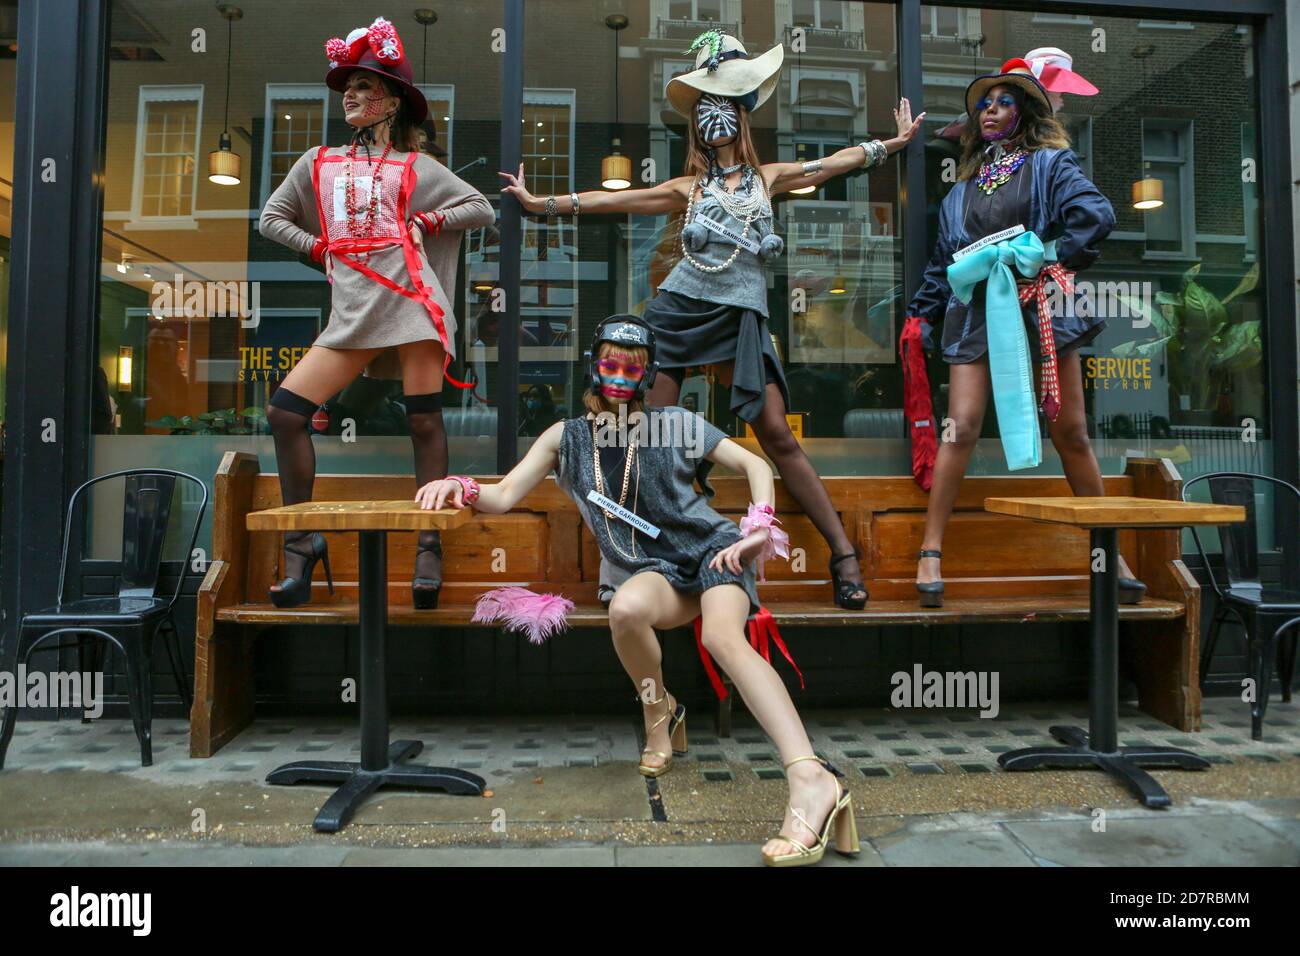 Londres, Royaume-Uni. 24 octobre 2020. Les modèles présentent la collection Pierre Garroudi lors du flash mob Fashion show dans le centre de Londres. Crédit : SOPA Images Limited/Alamy Live News Banque D'Images